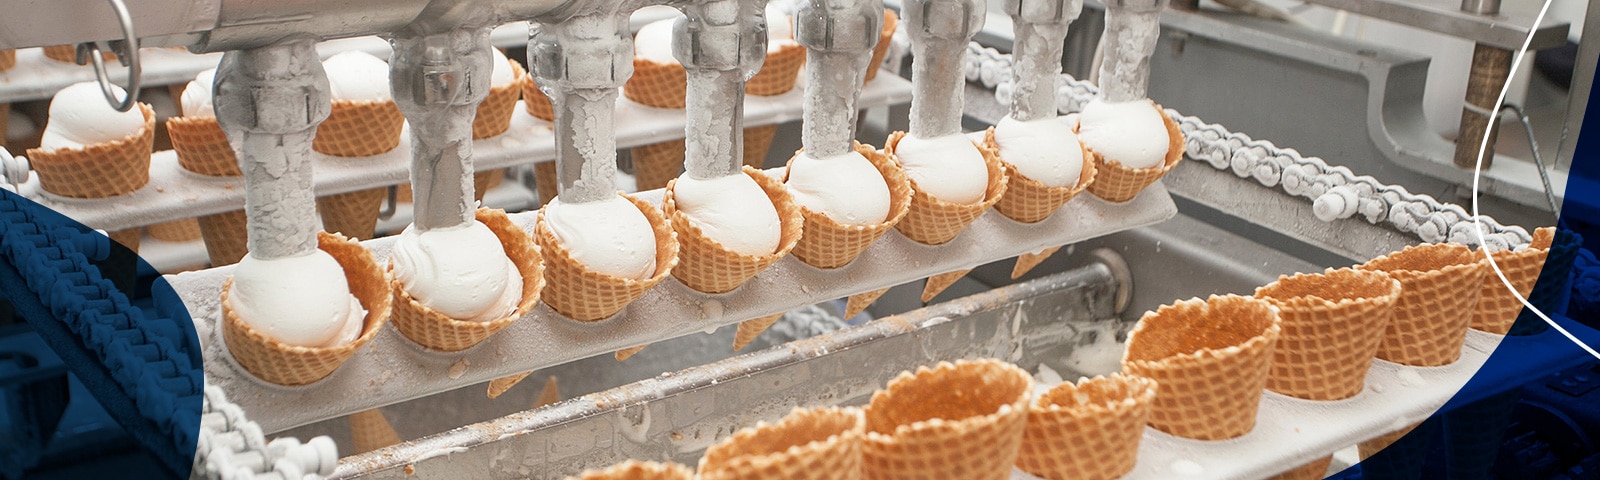 Désinfection dans l’industrie de la crème glacée